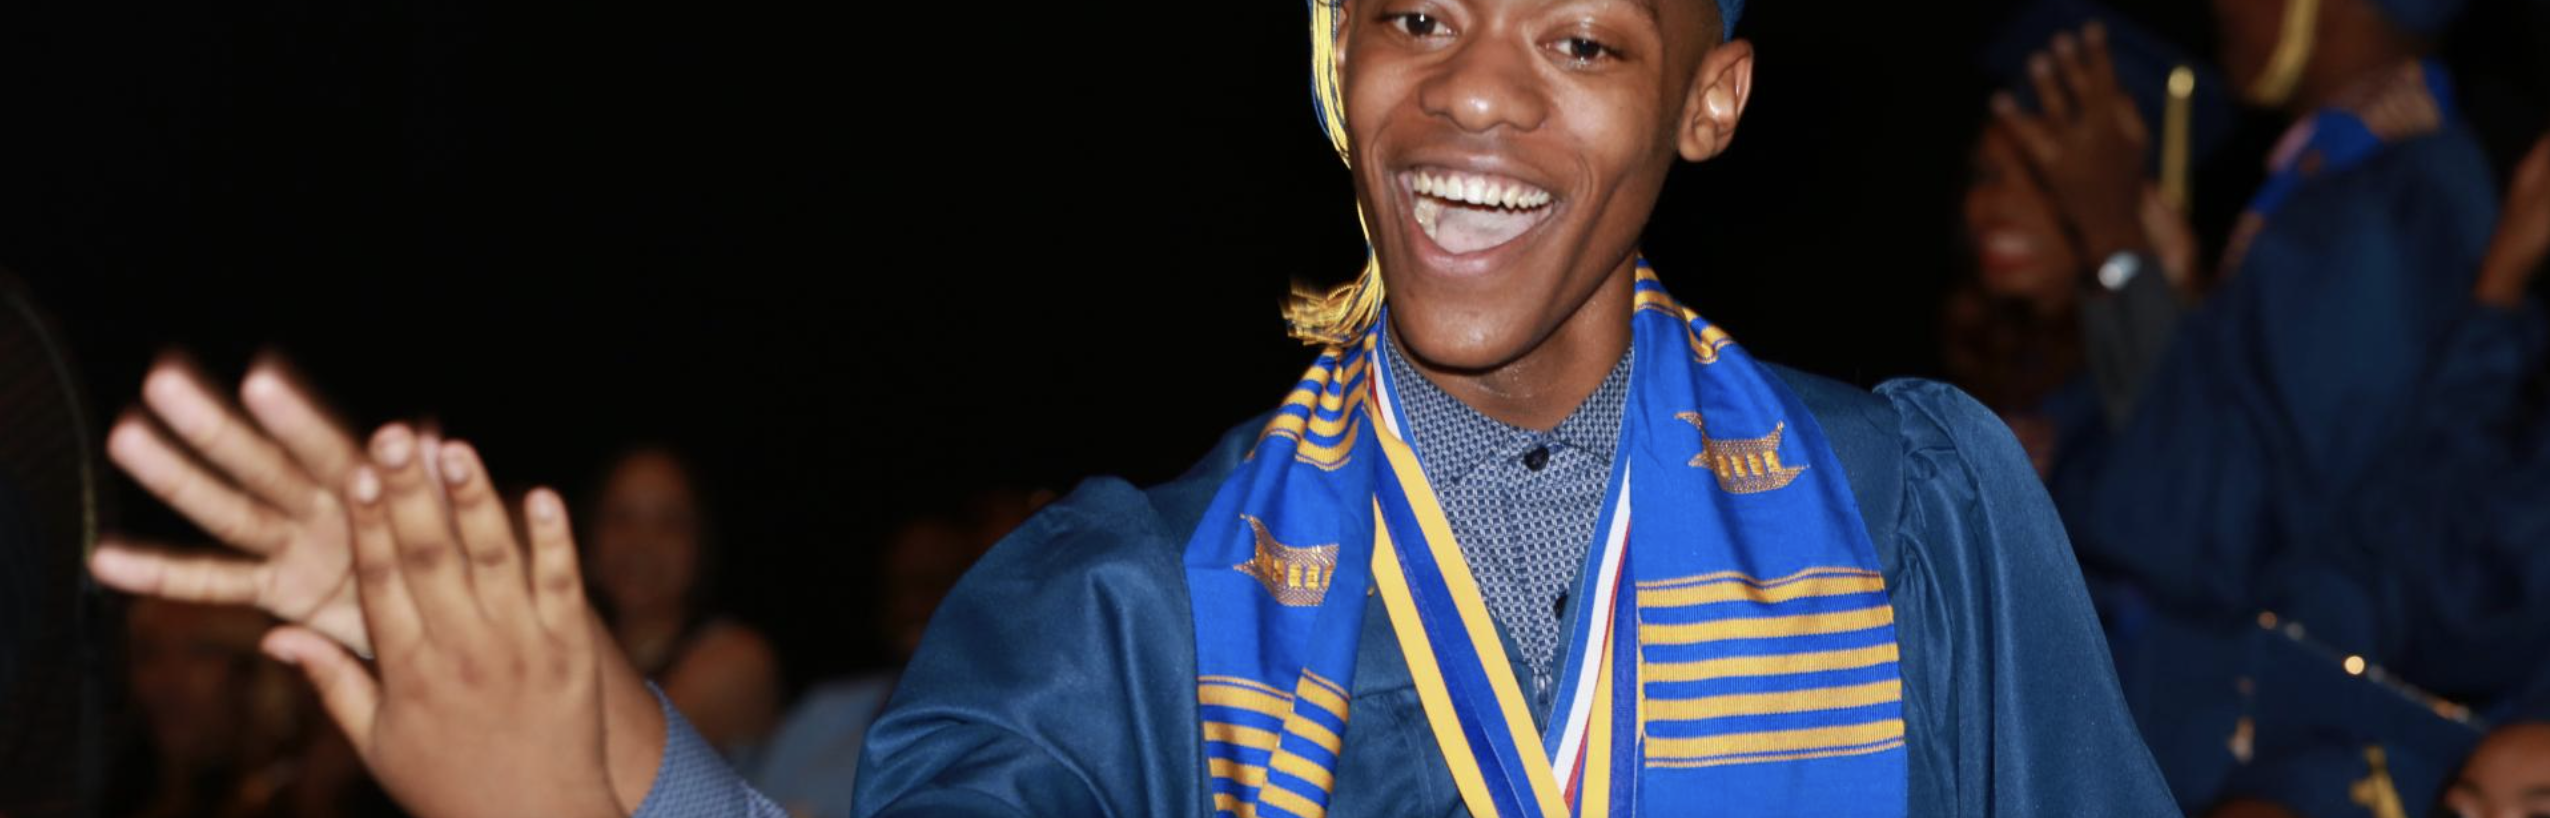 boy smiling at his graduation